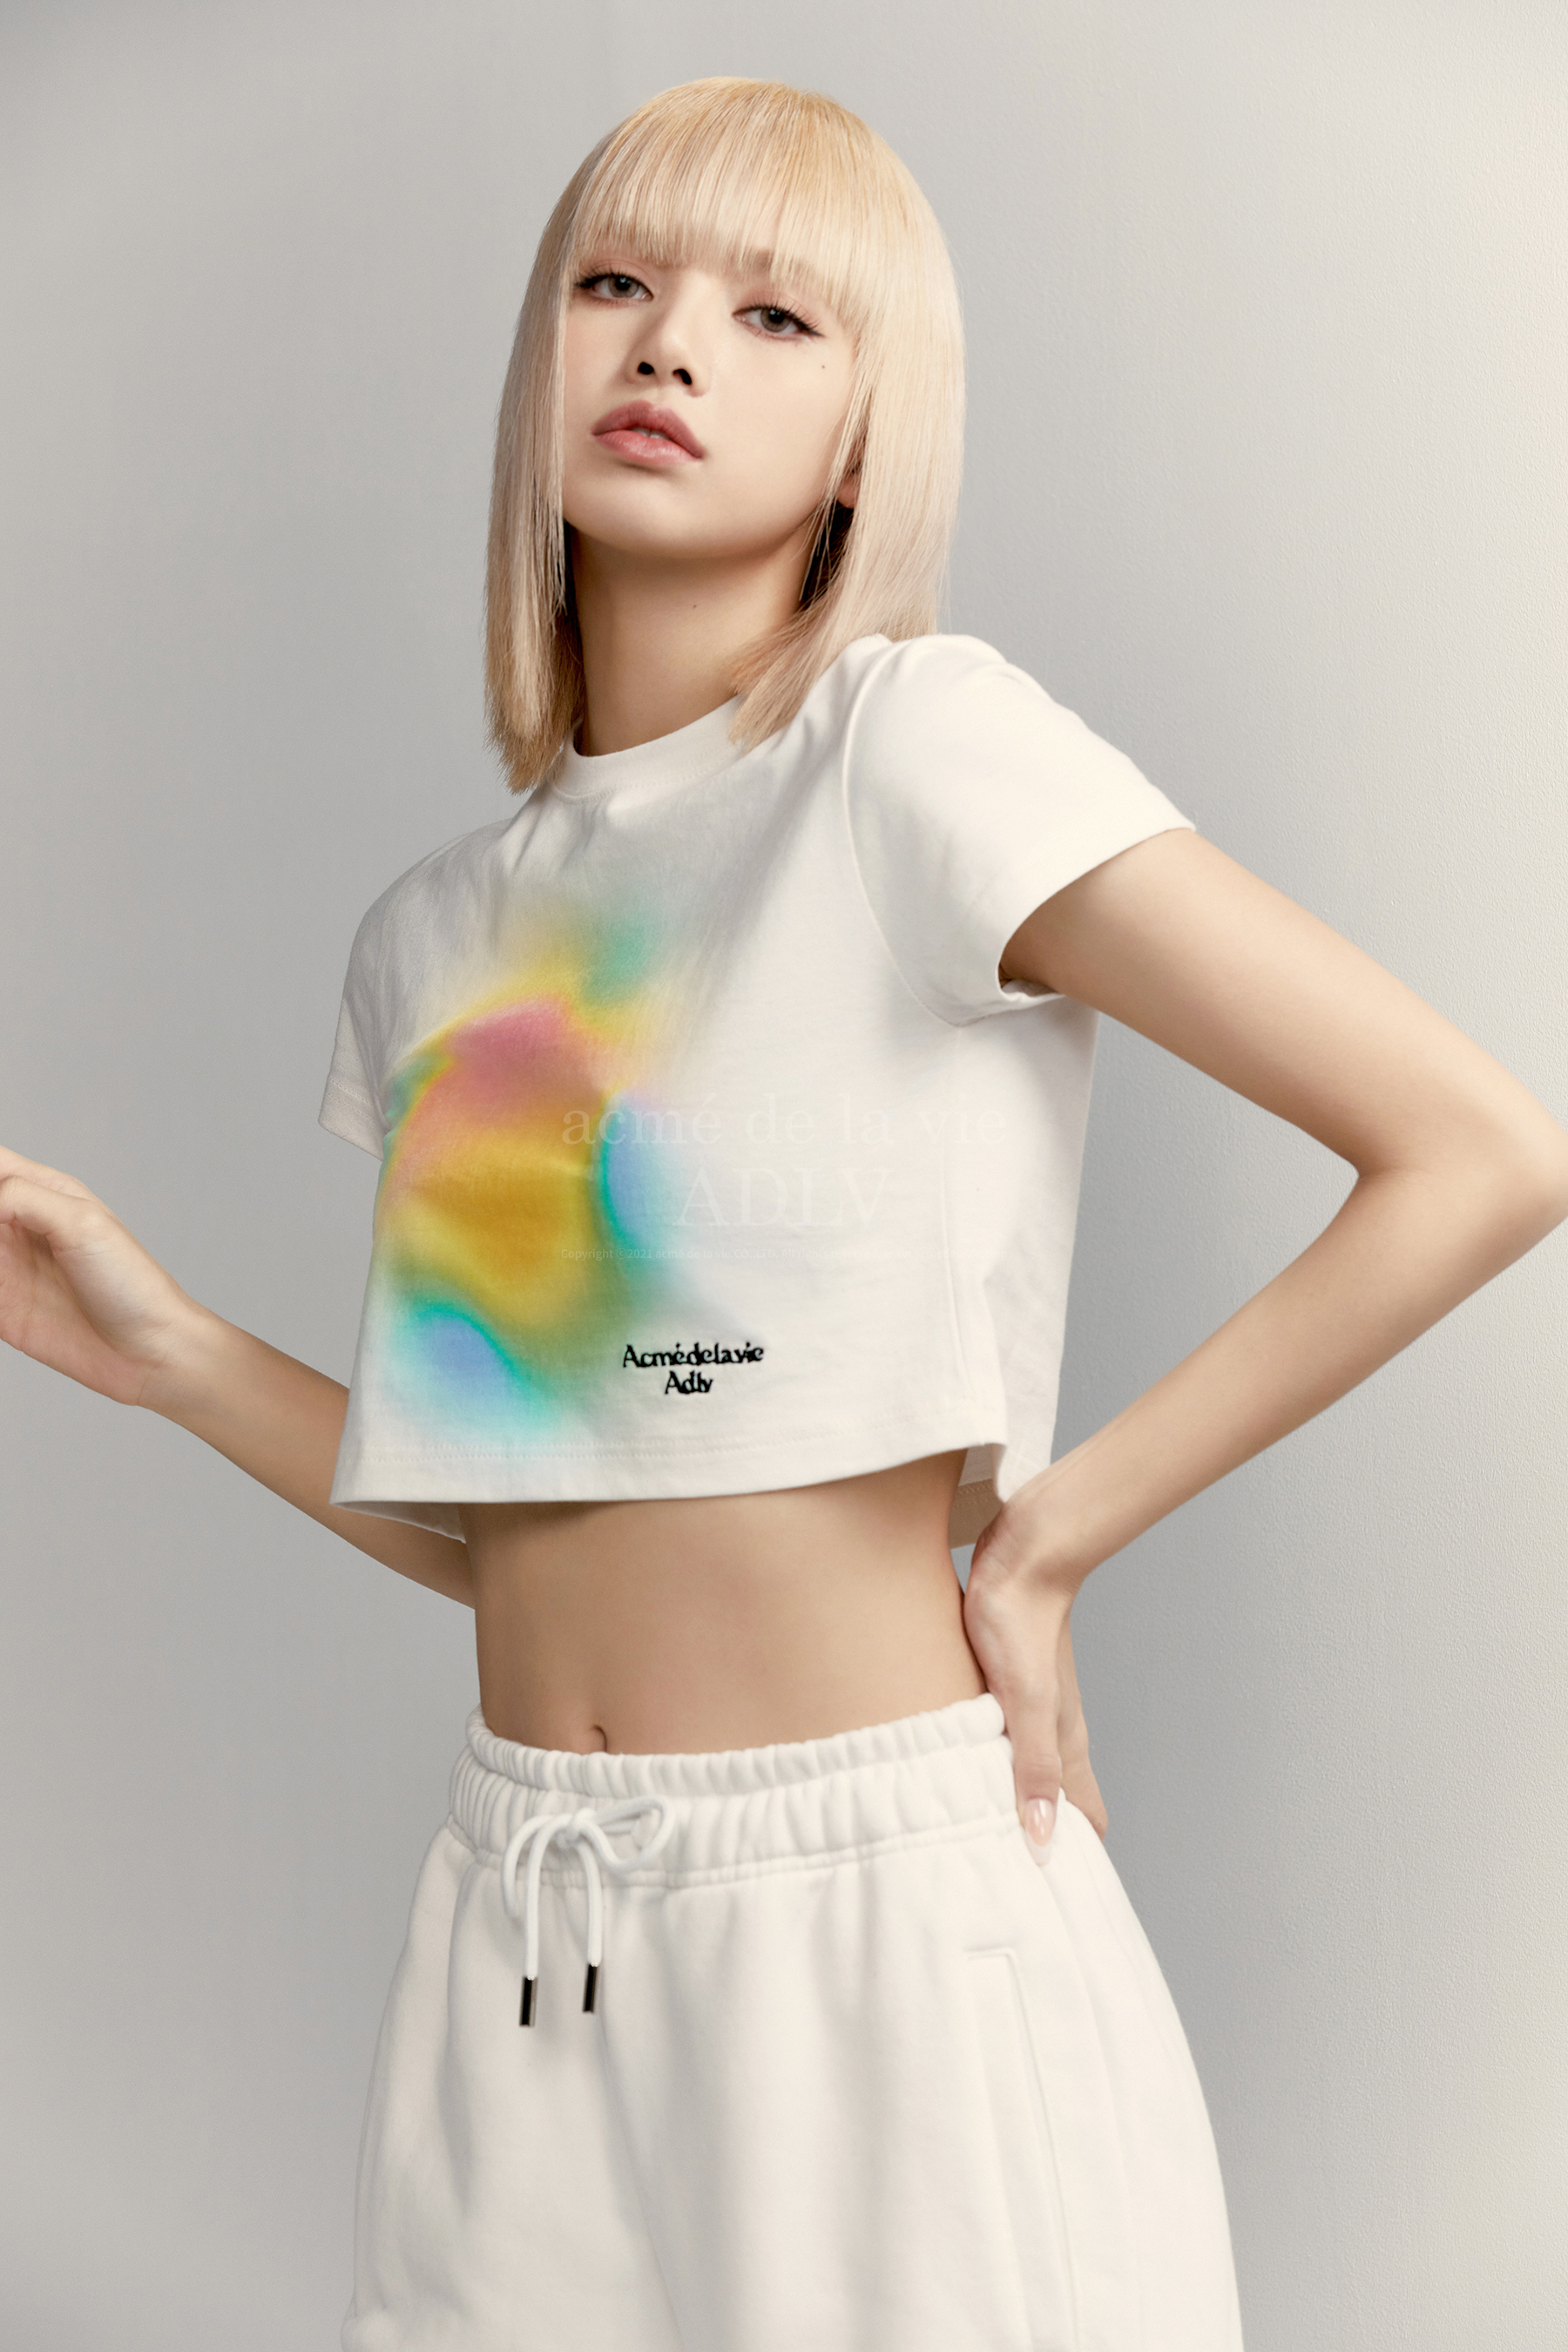 BLACKPINK Lisa acmé de la vie (ADLV) Korean Streetwear Brand